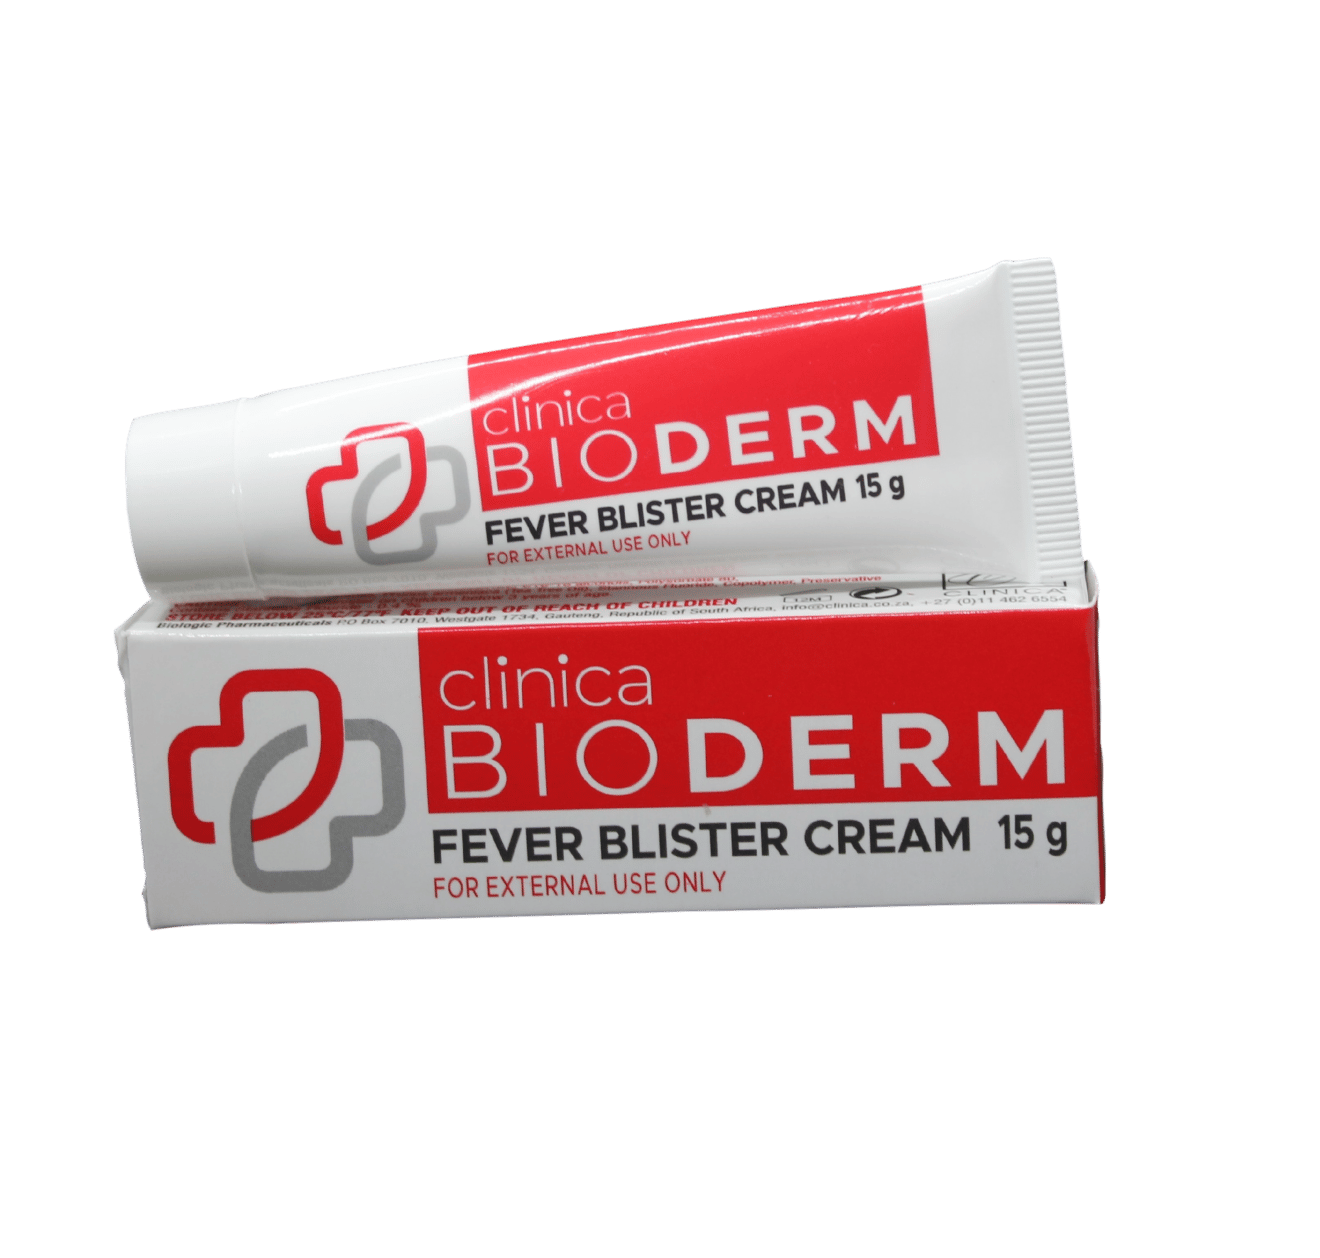 Bioderm Fever Blister Cream